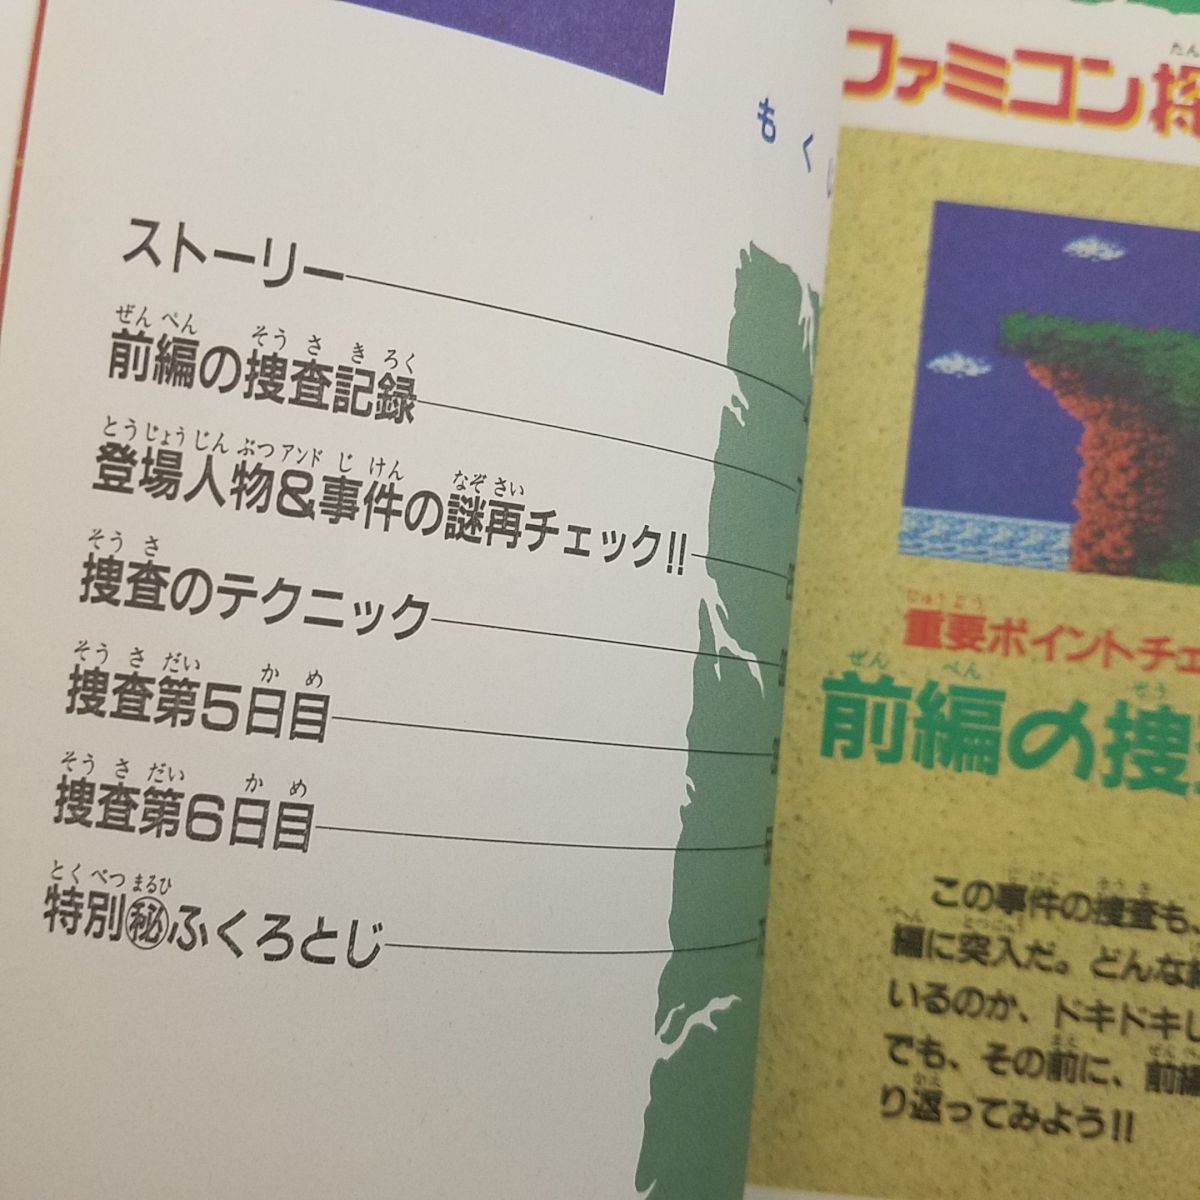  гид [..... комикс ...книга@ Famicom .. клуб исчезнувший пришедший на смену человек 3 шт. комплект ( передний сборник * после сборник *. раз . решение сборник )( перевод есть )] Famicom 